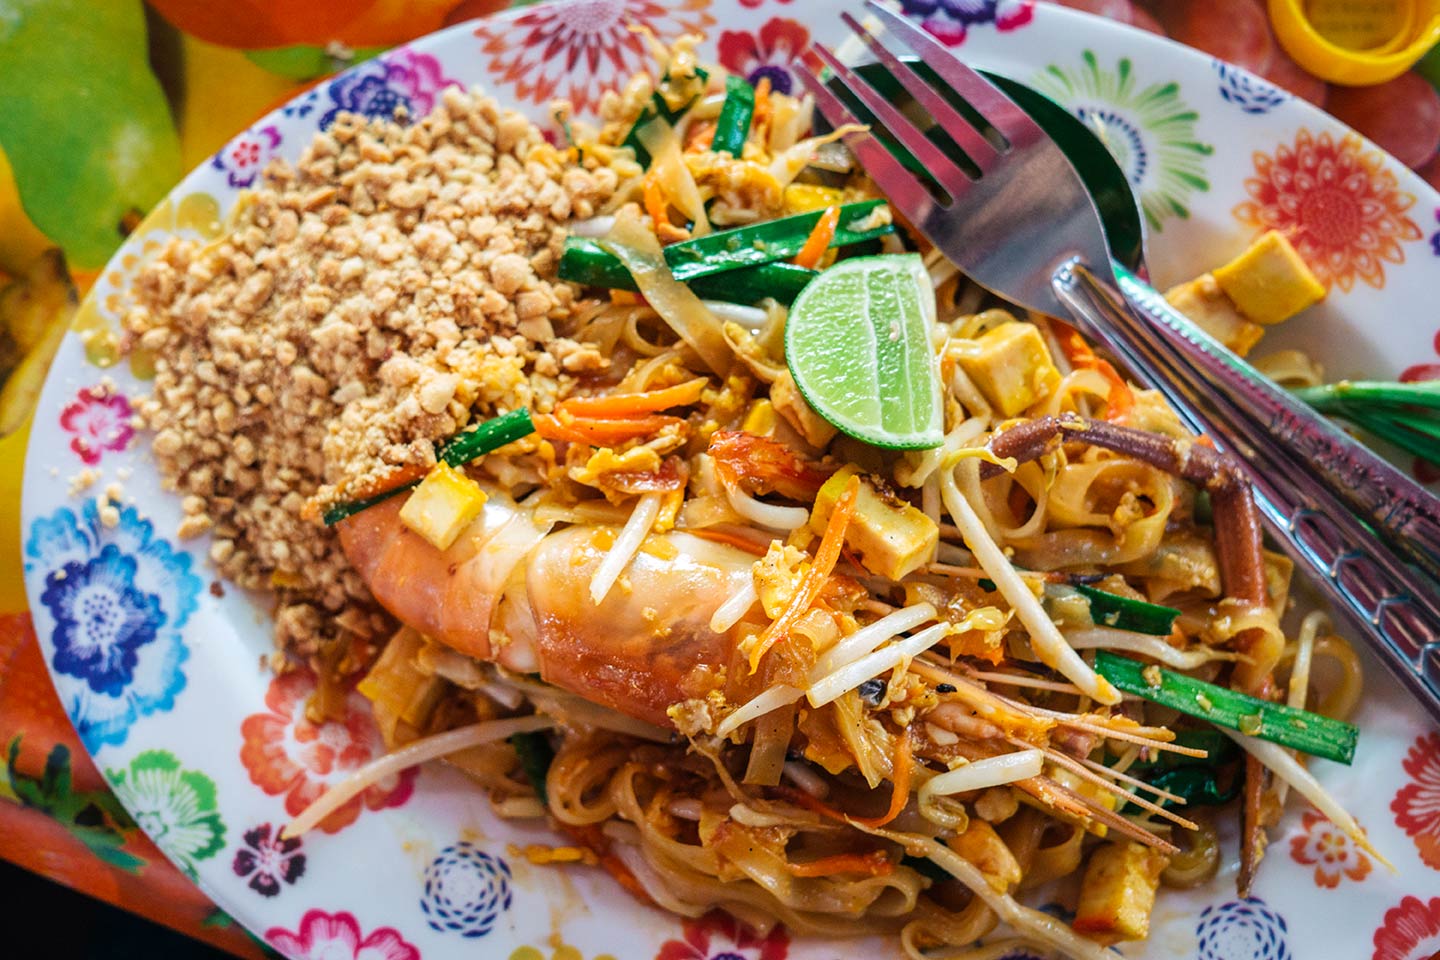 Pad Thai noodles at Chatuchak Market Bangkok Thailand